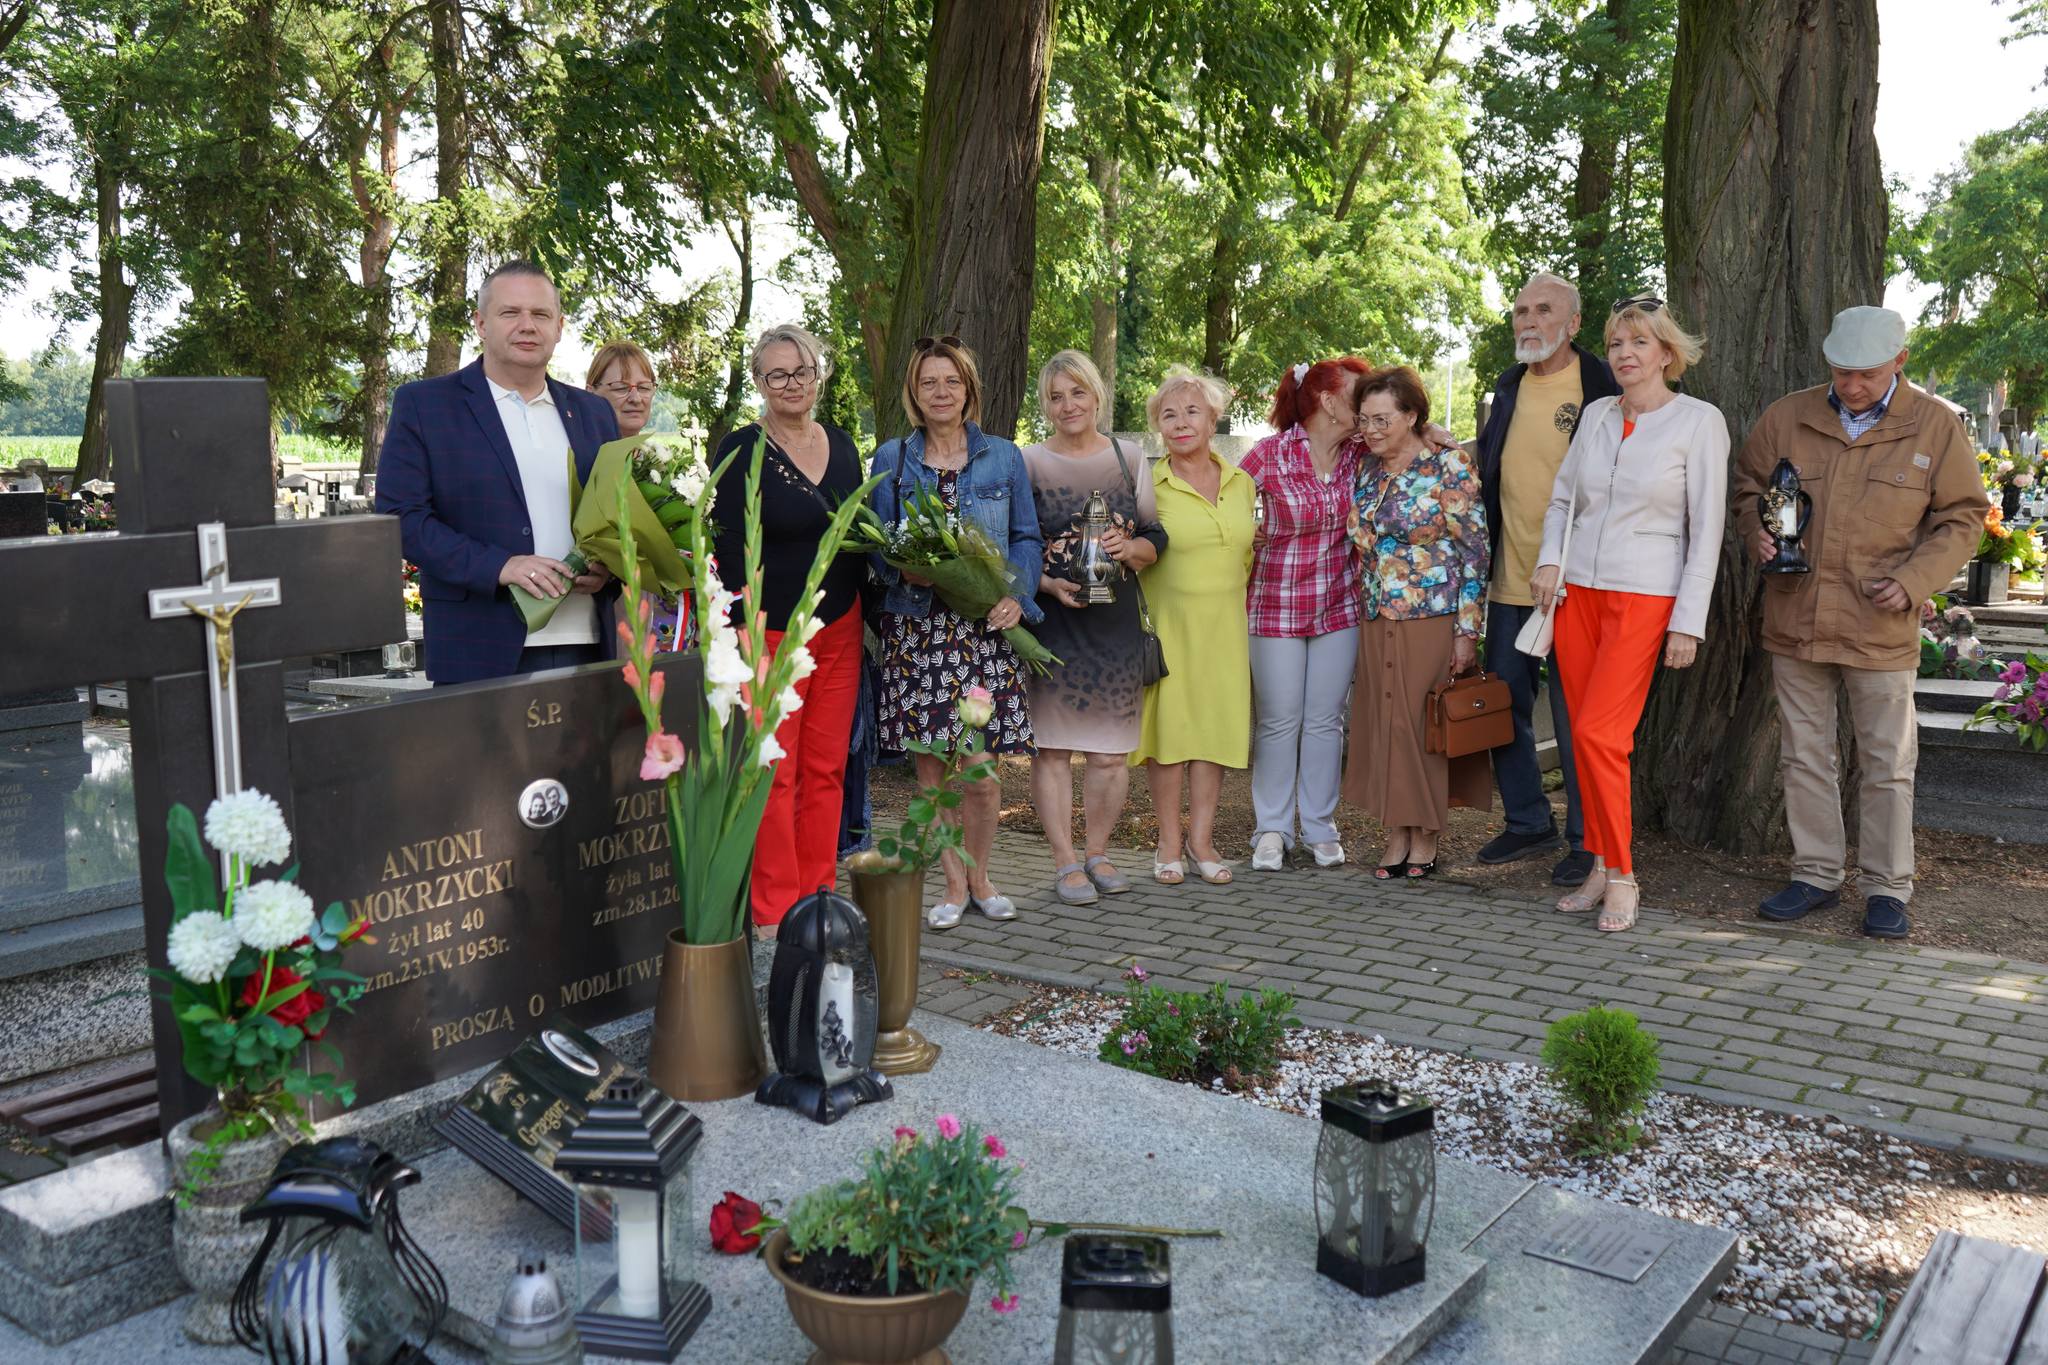 Zdjęcie przedstawia grupę ludzi zgromadzonych na cmentarzu, w tle widać zielone drzewa, a grupa osób trzyma kwiaty i znicze. Atmosfera jest spokojna i pełna zadumy, jest okazją upamiętnienia zmarłego  Grzegorza Mokrzyckiego